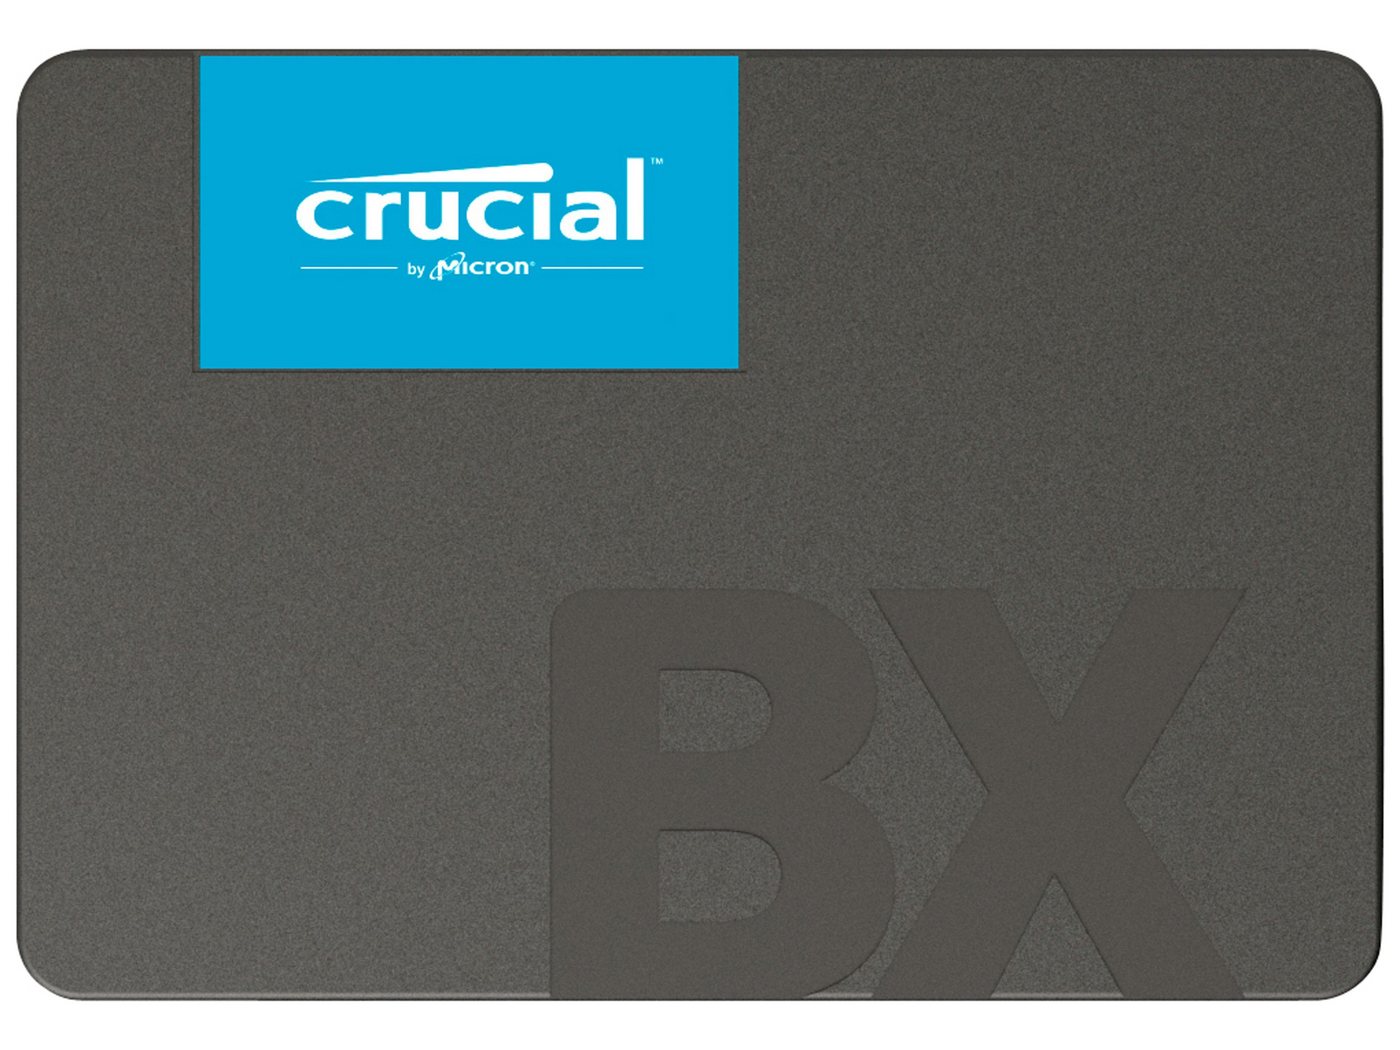 Crucial CRUCIAL SSD BX500, 1 TB interne SSD von Crucial